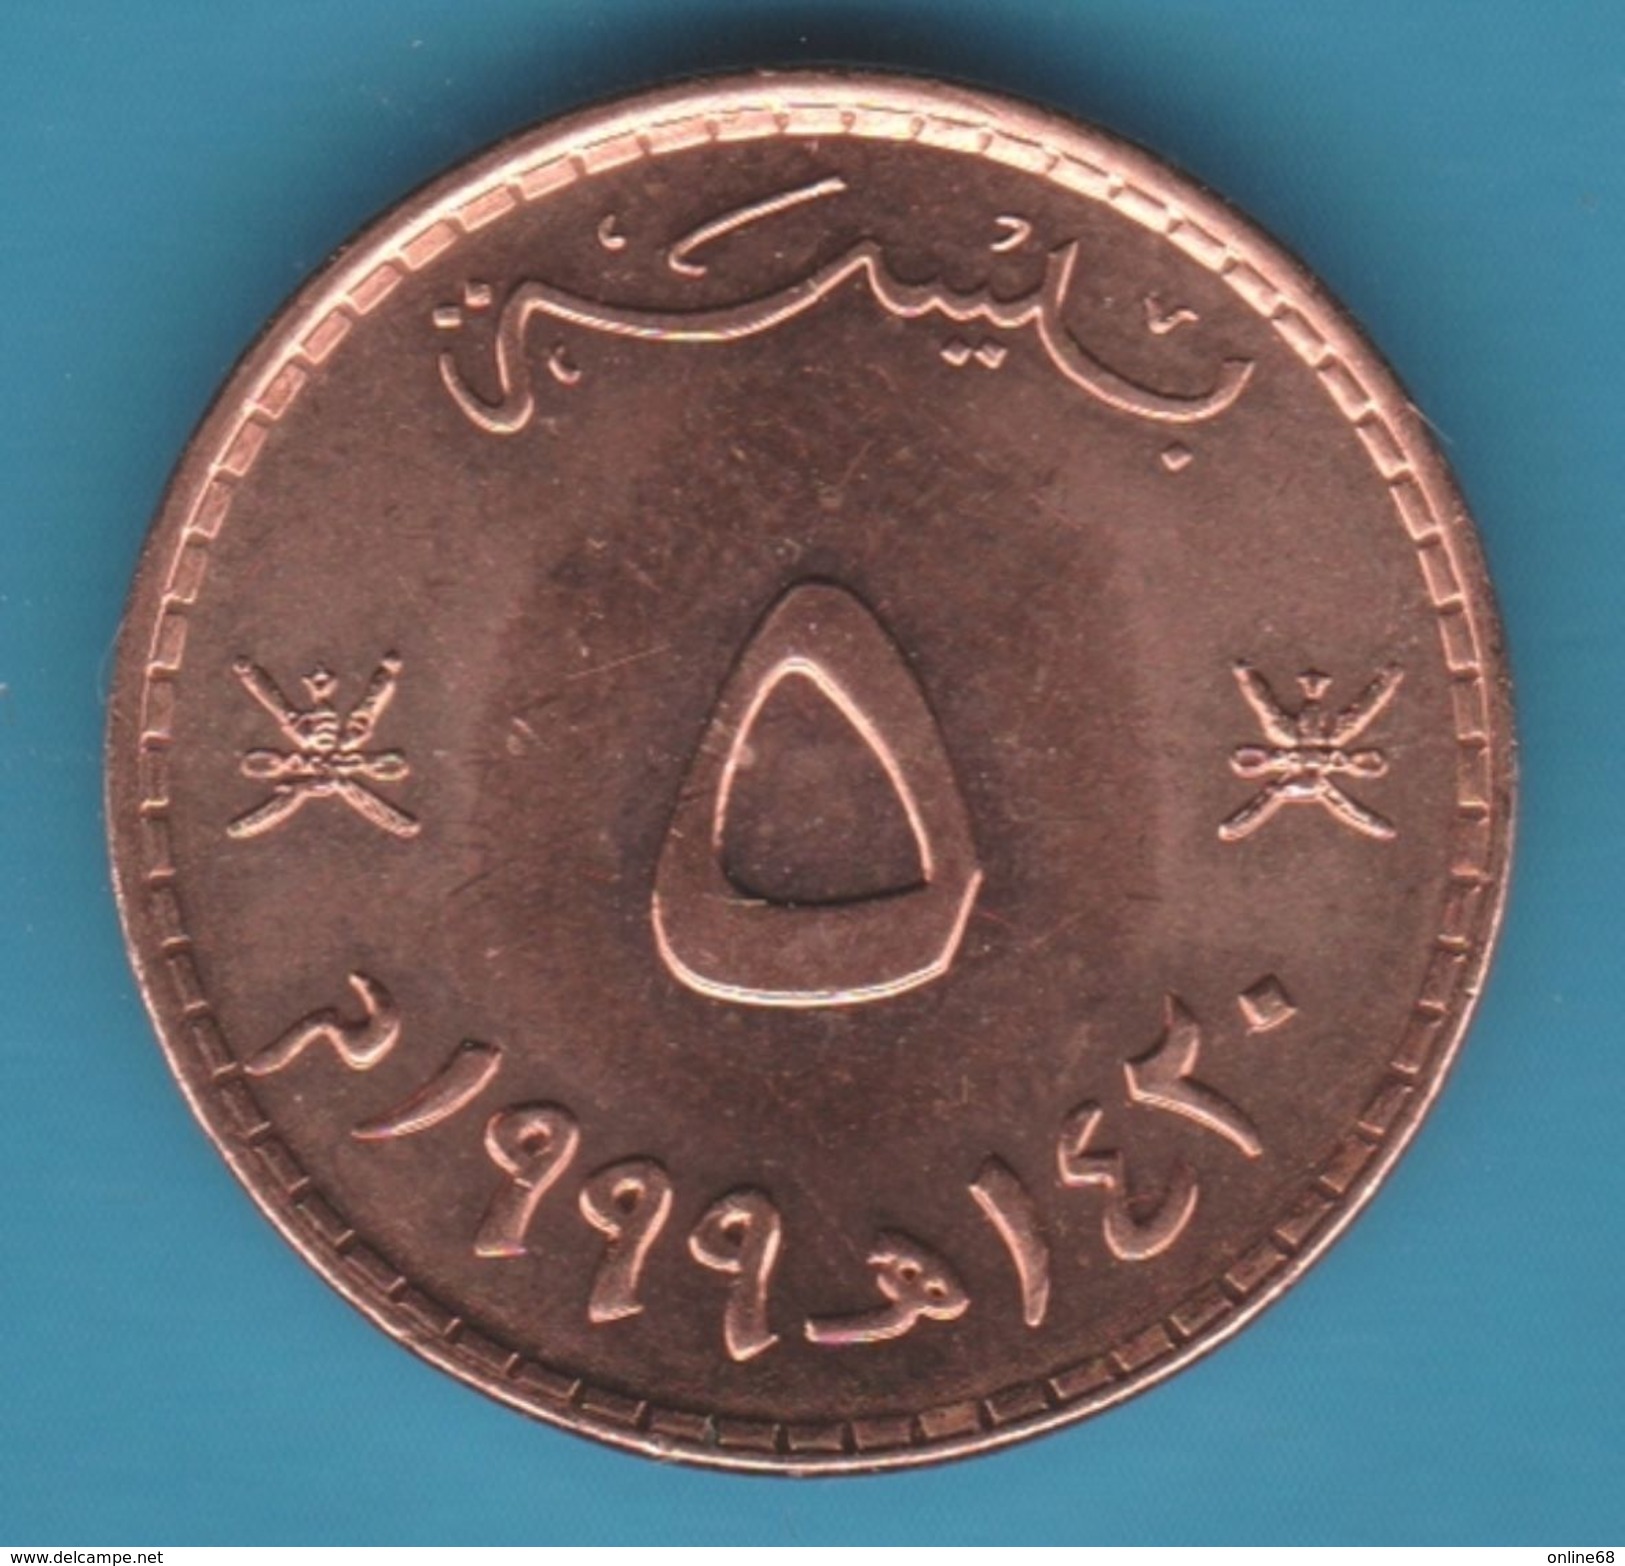 OMAN 5 Baisa 1420 (1999) - Qabus Bin Sa'id  UNC - Oman